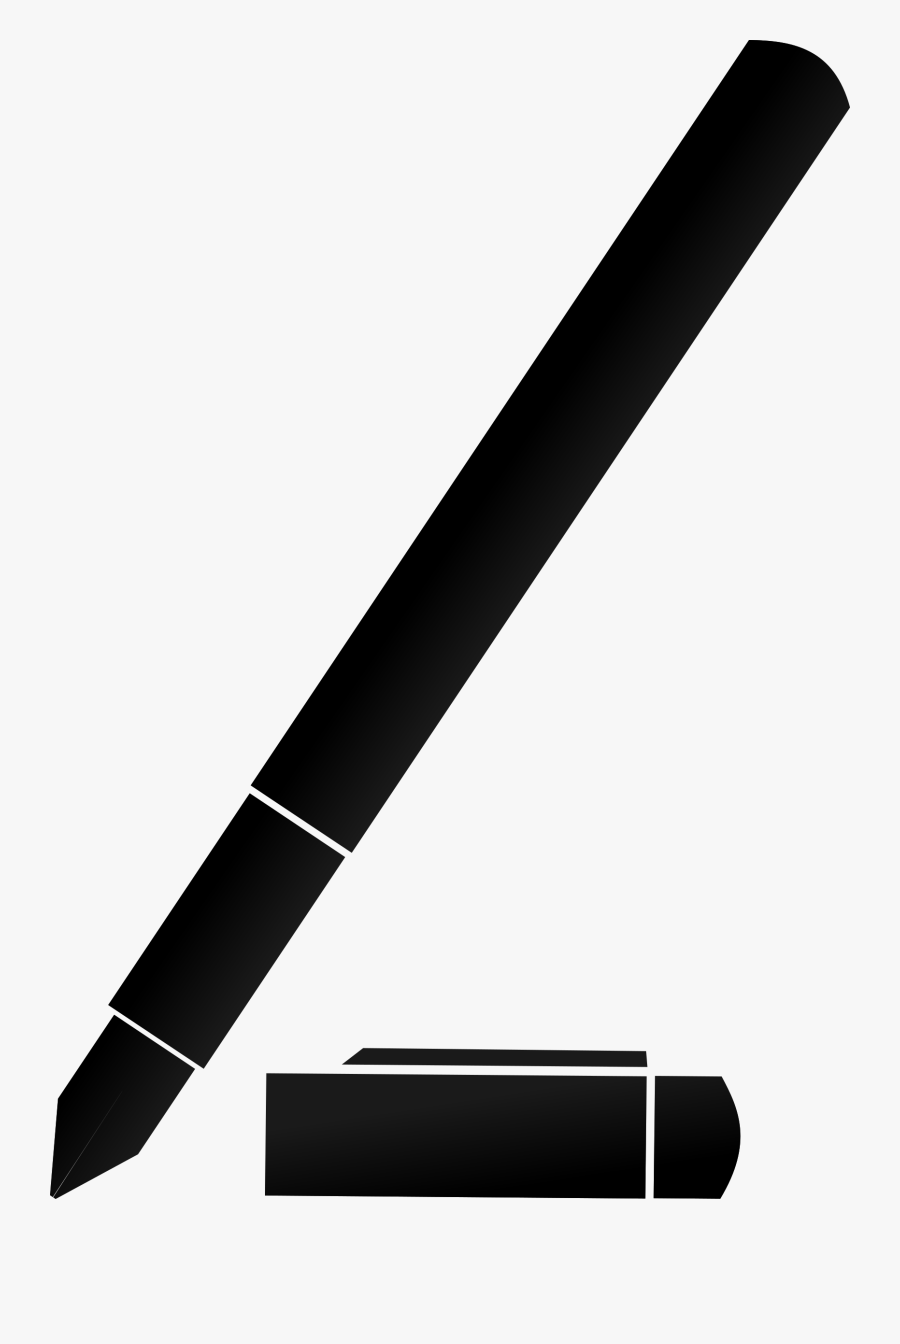 Turkey Pen Clipart Black And White - Black Pen Clipart, Transparent Clipart